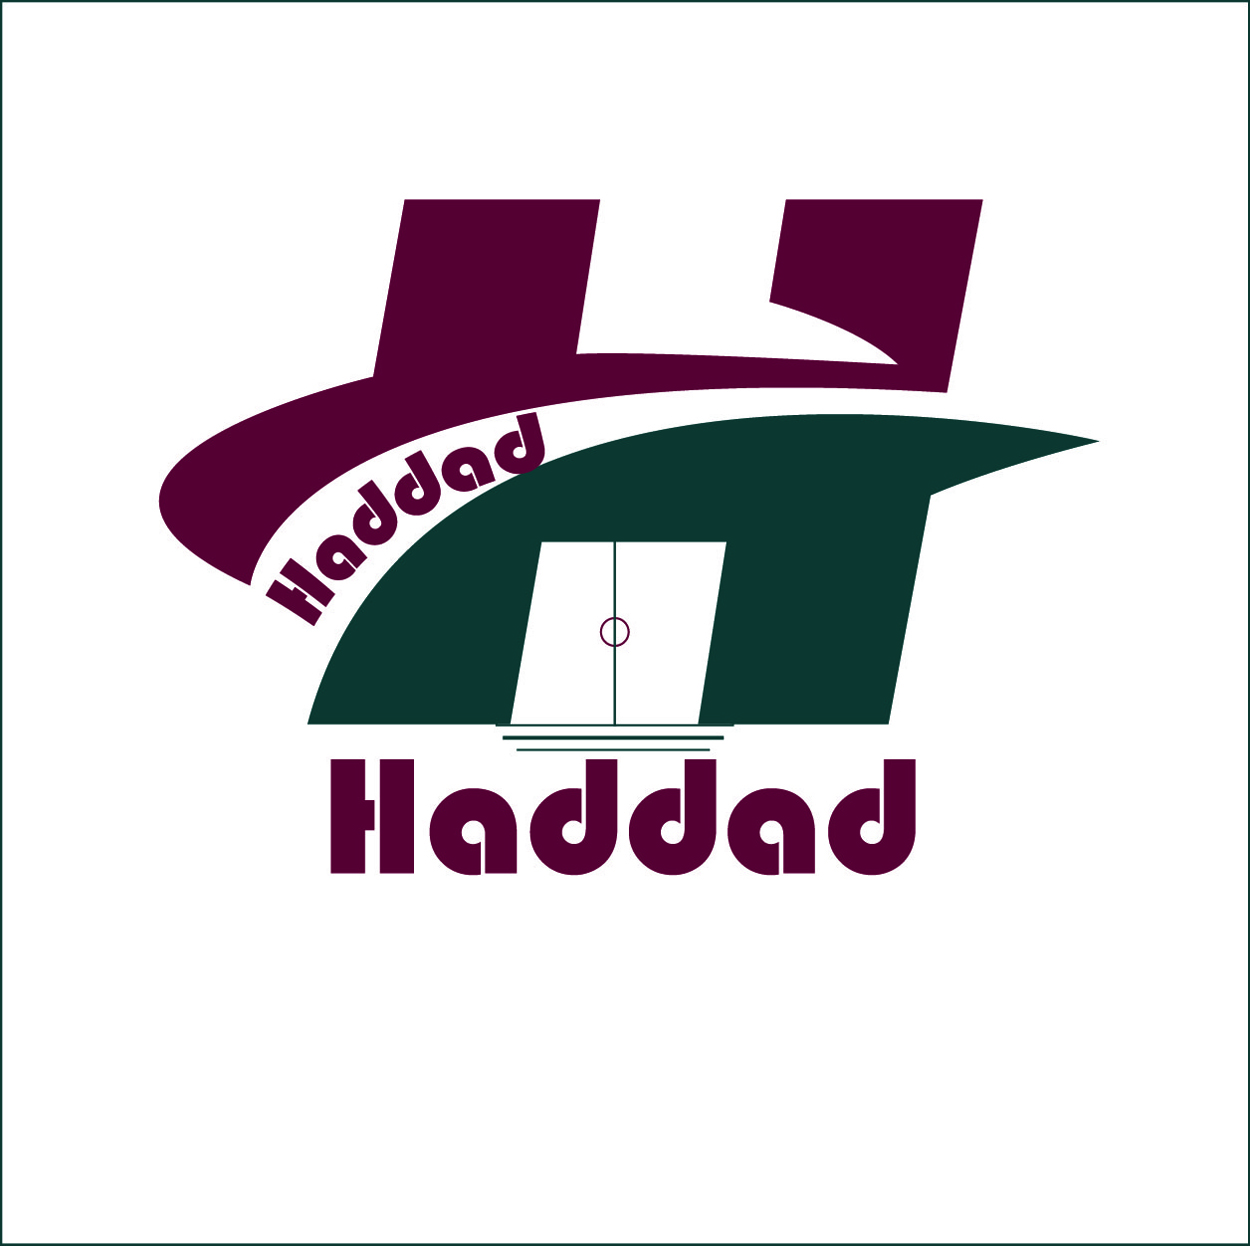 haddad travel agency